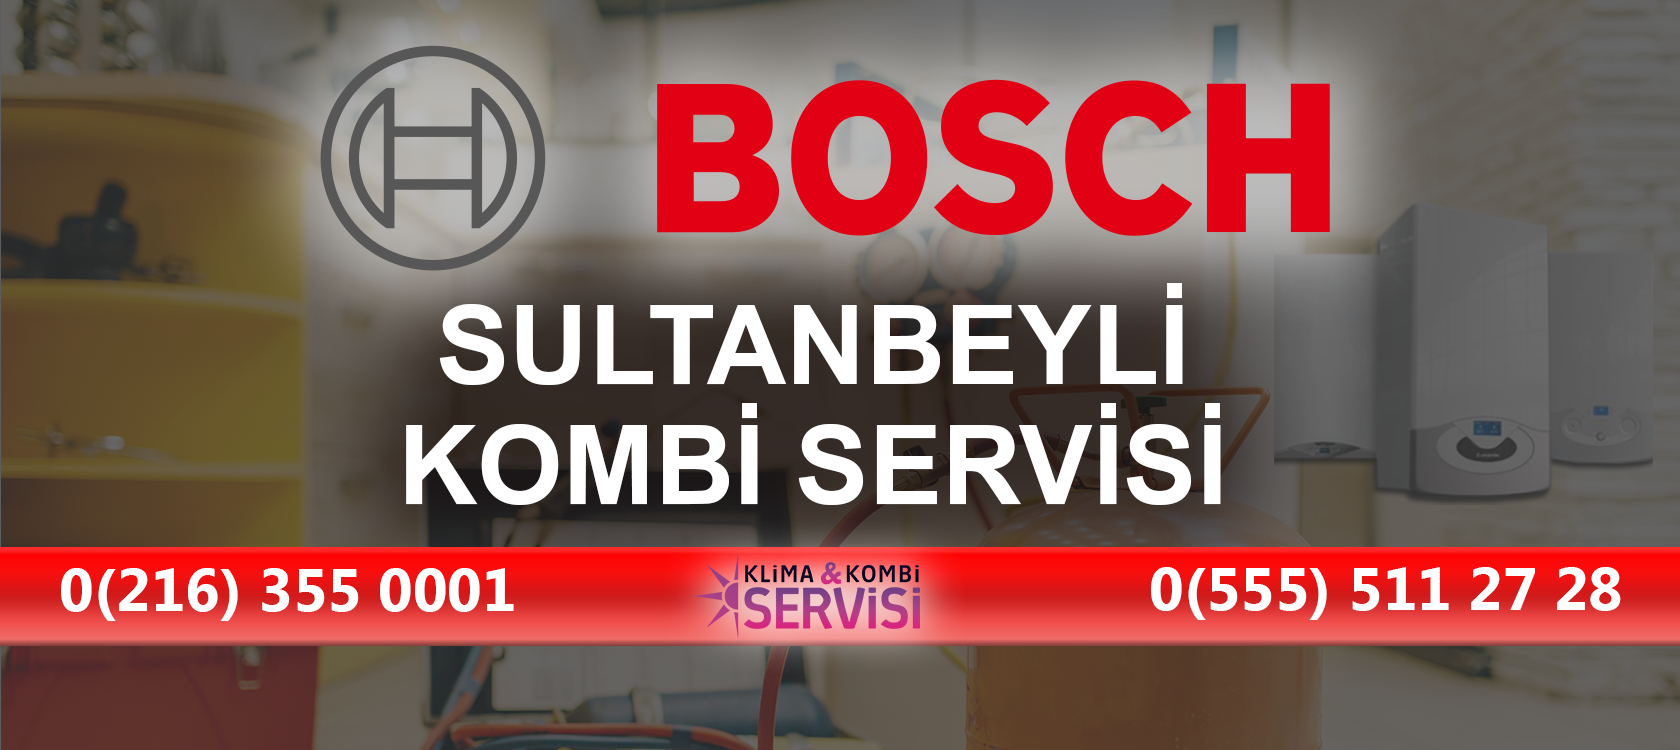 SULTANBEYLI Bosch Kombi Servisi 1